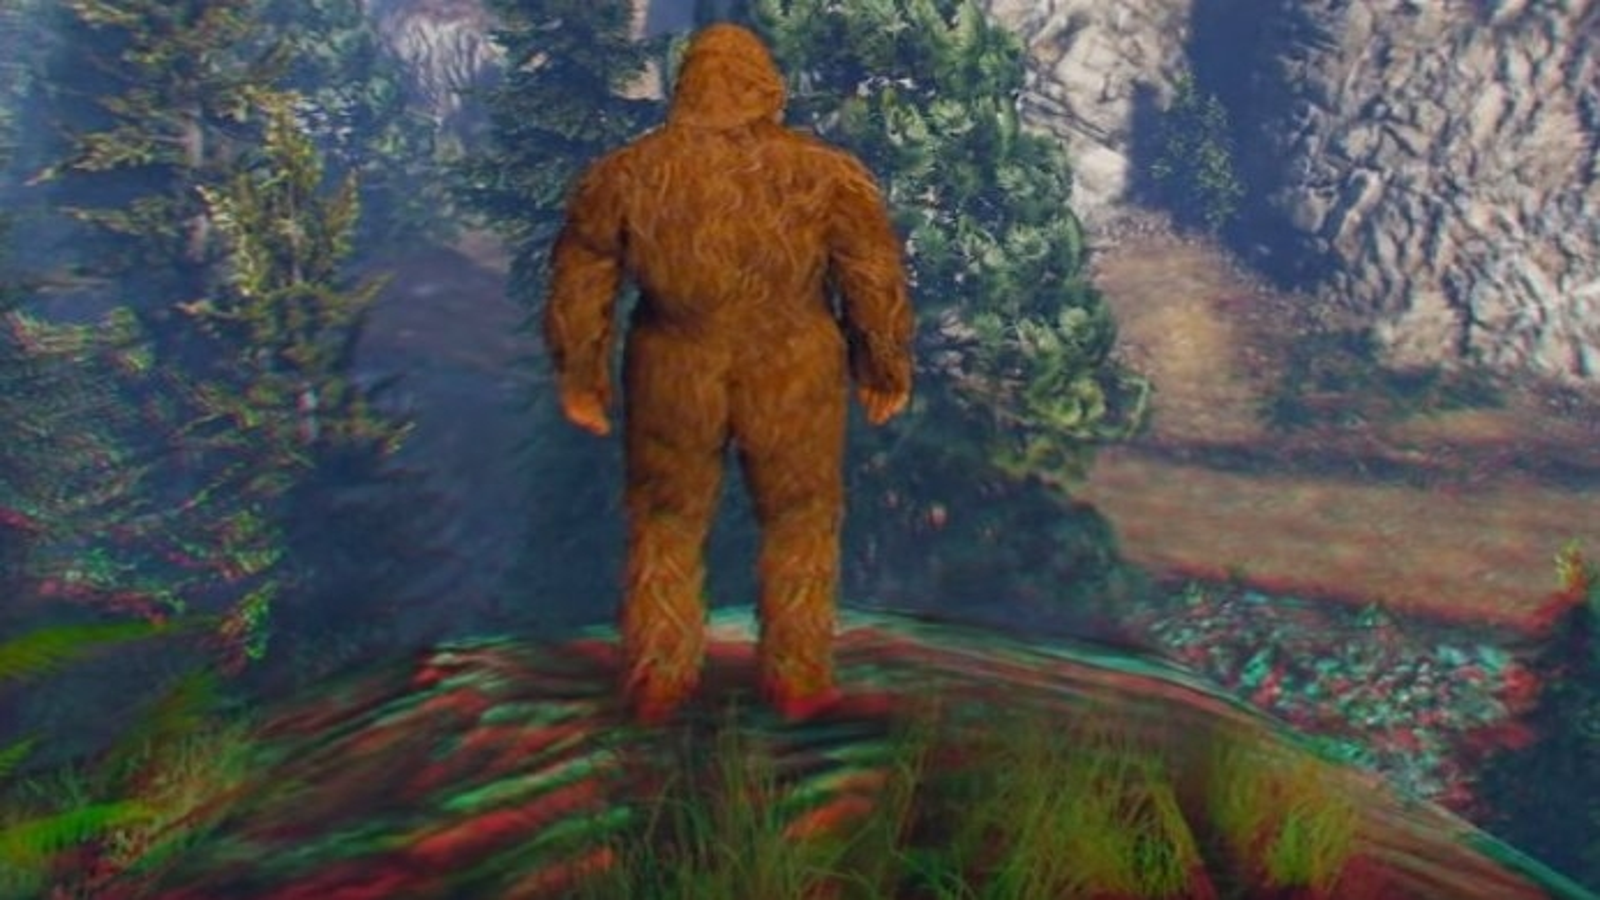 Easter Egg do Bigfoot descoberto em GTA 5